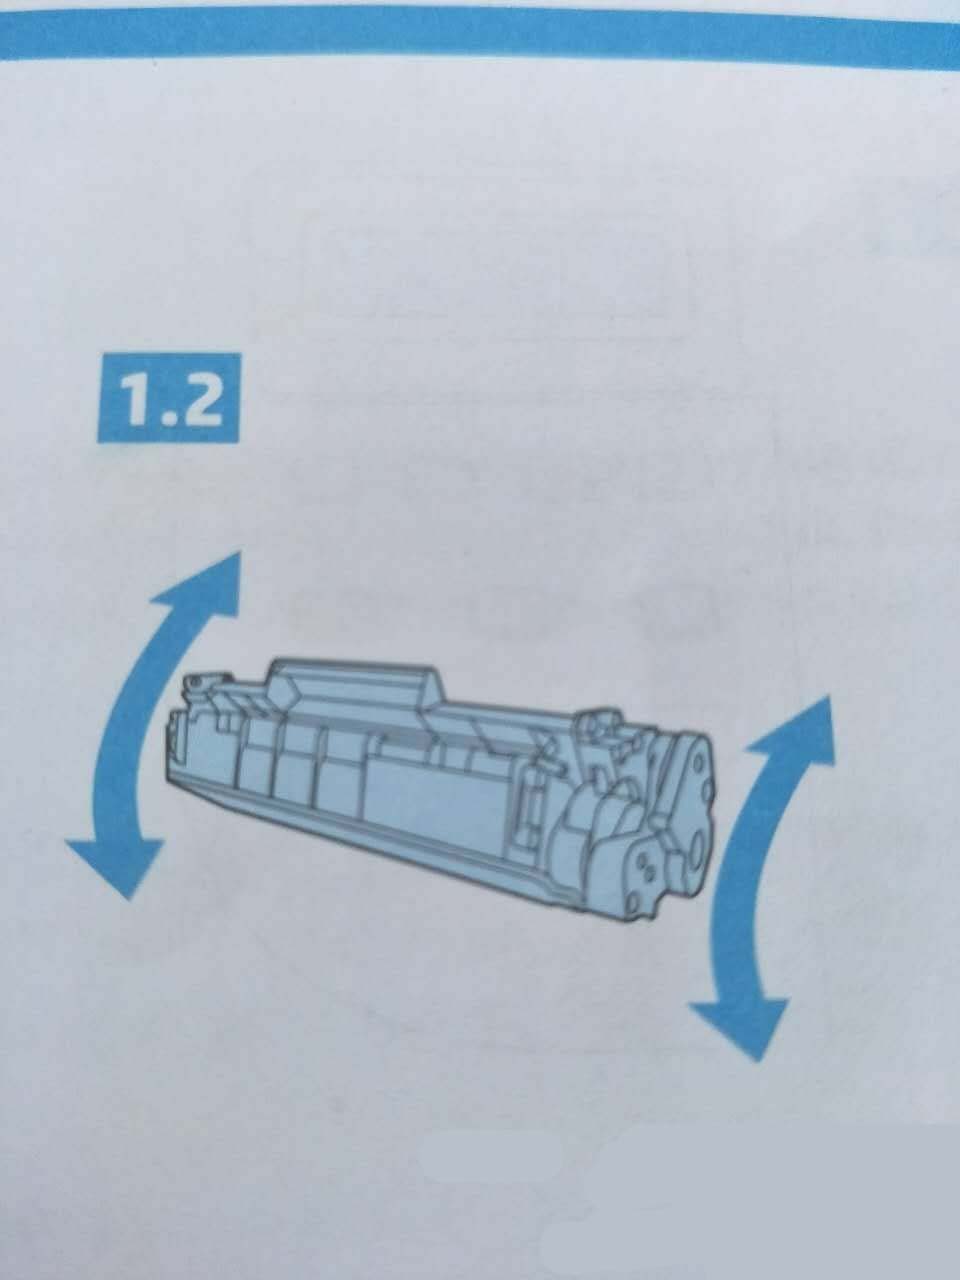 惠普M1005打印机怎么安装墨盒?